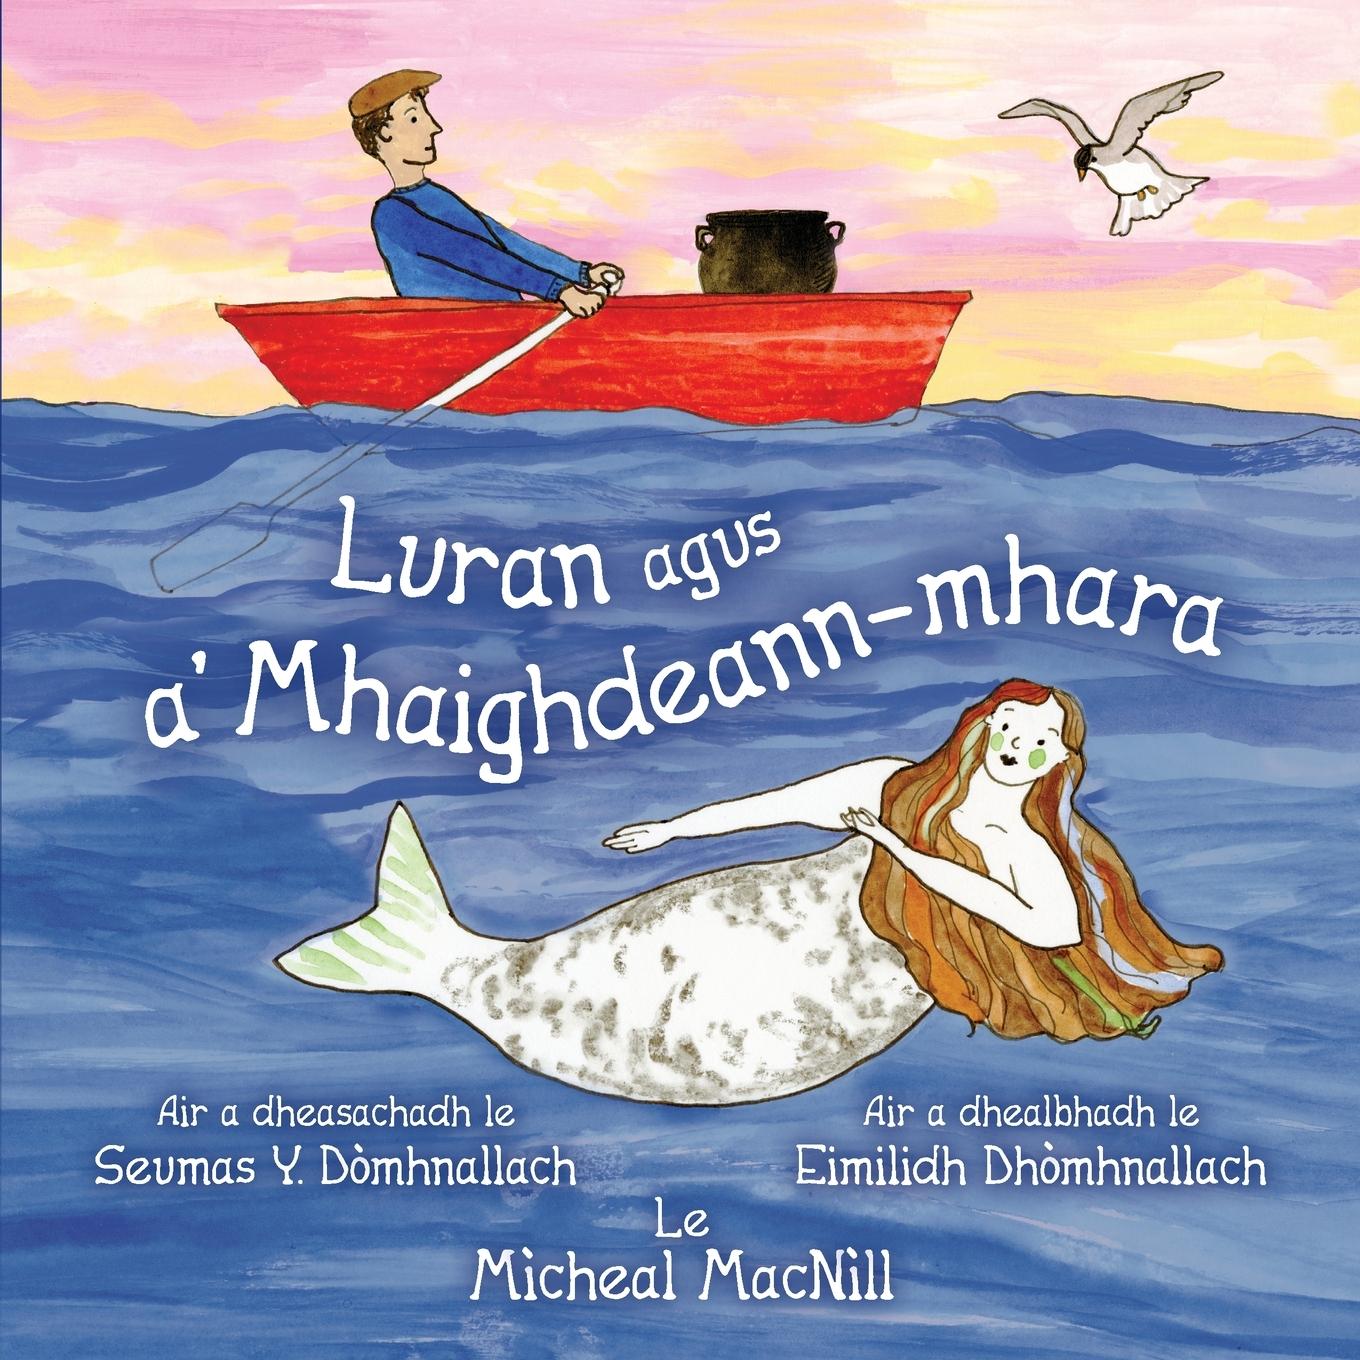 Book Luran agus a' Mhaighdeann-mhara Seumas D?mhnallach